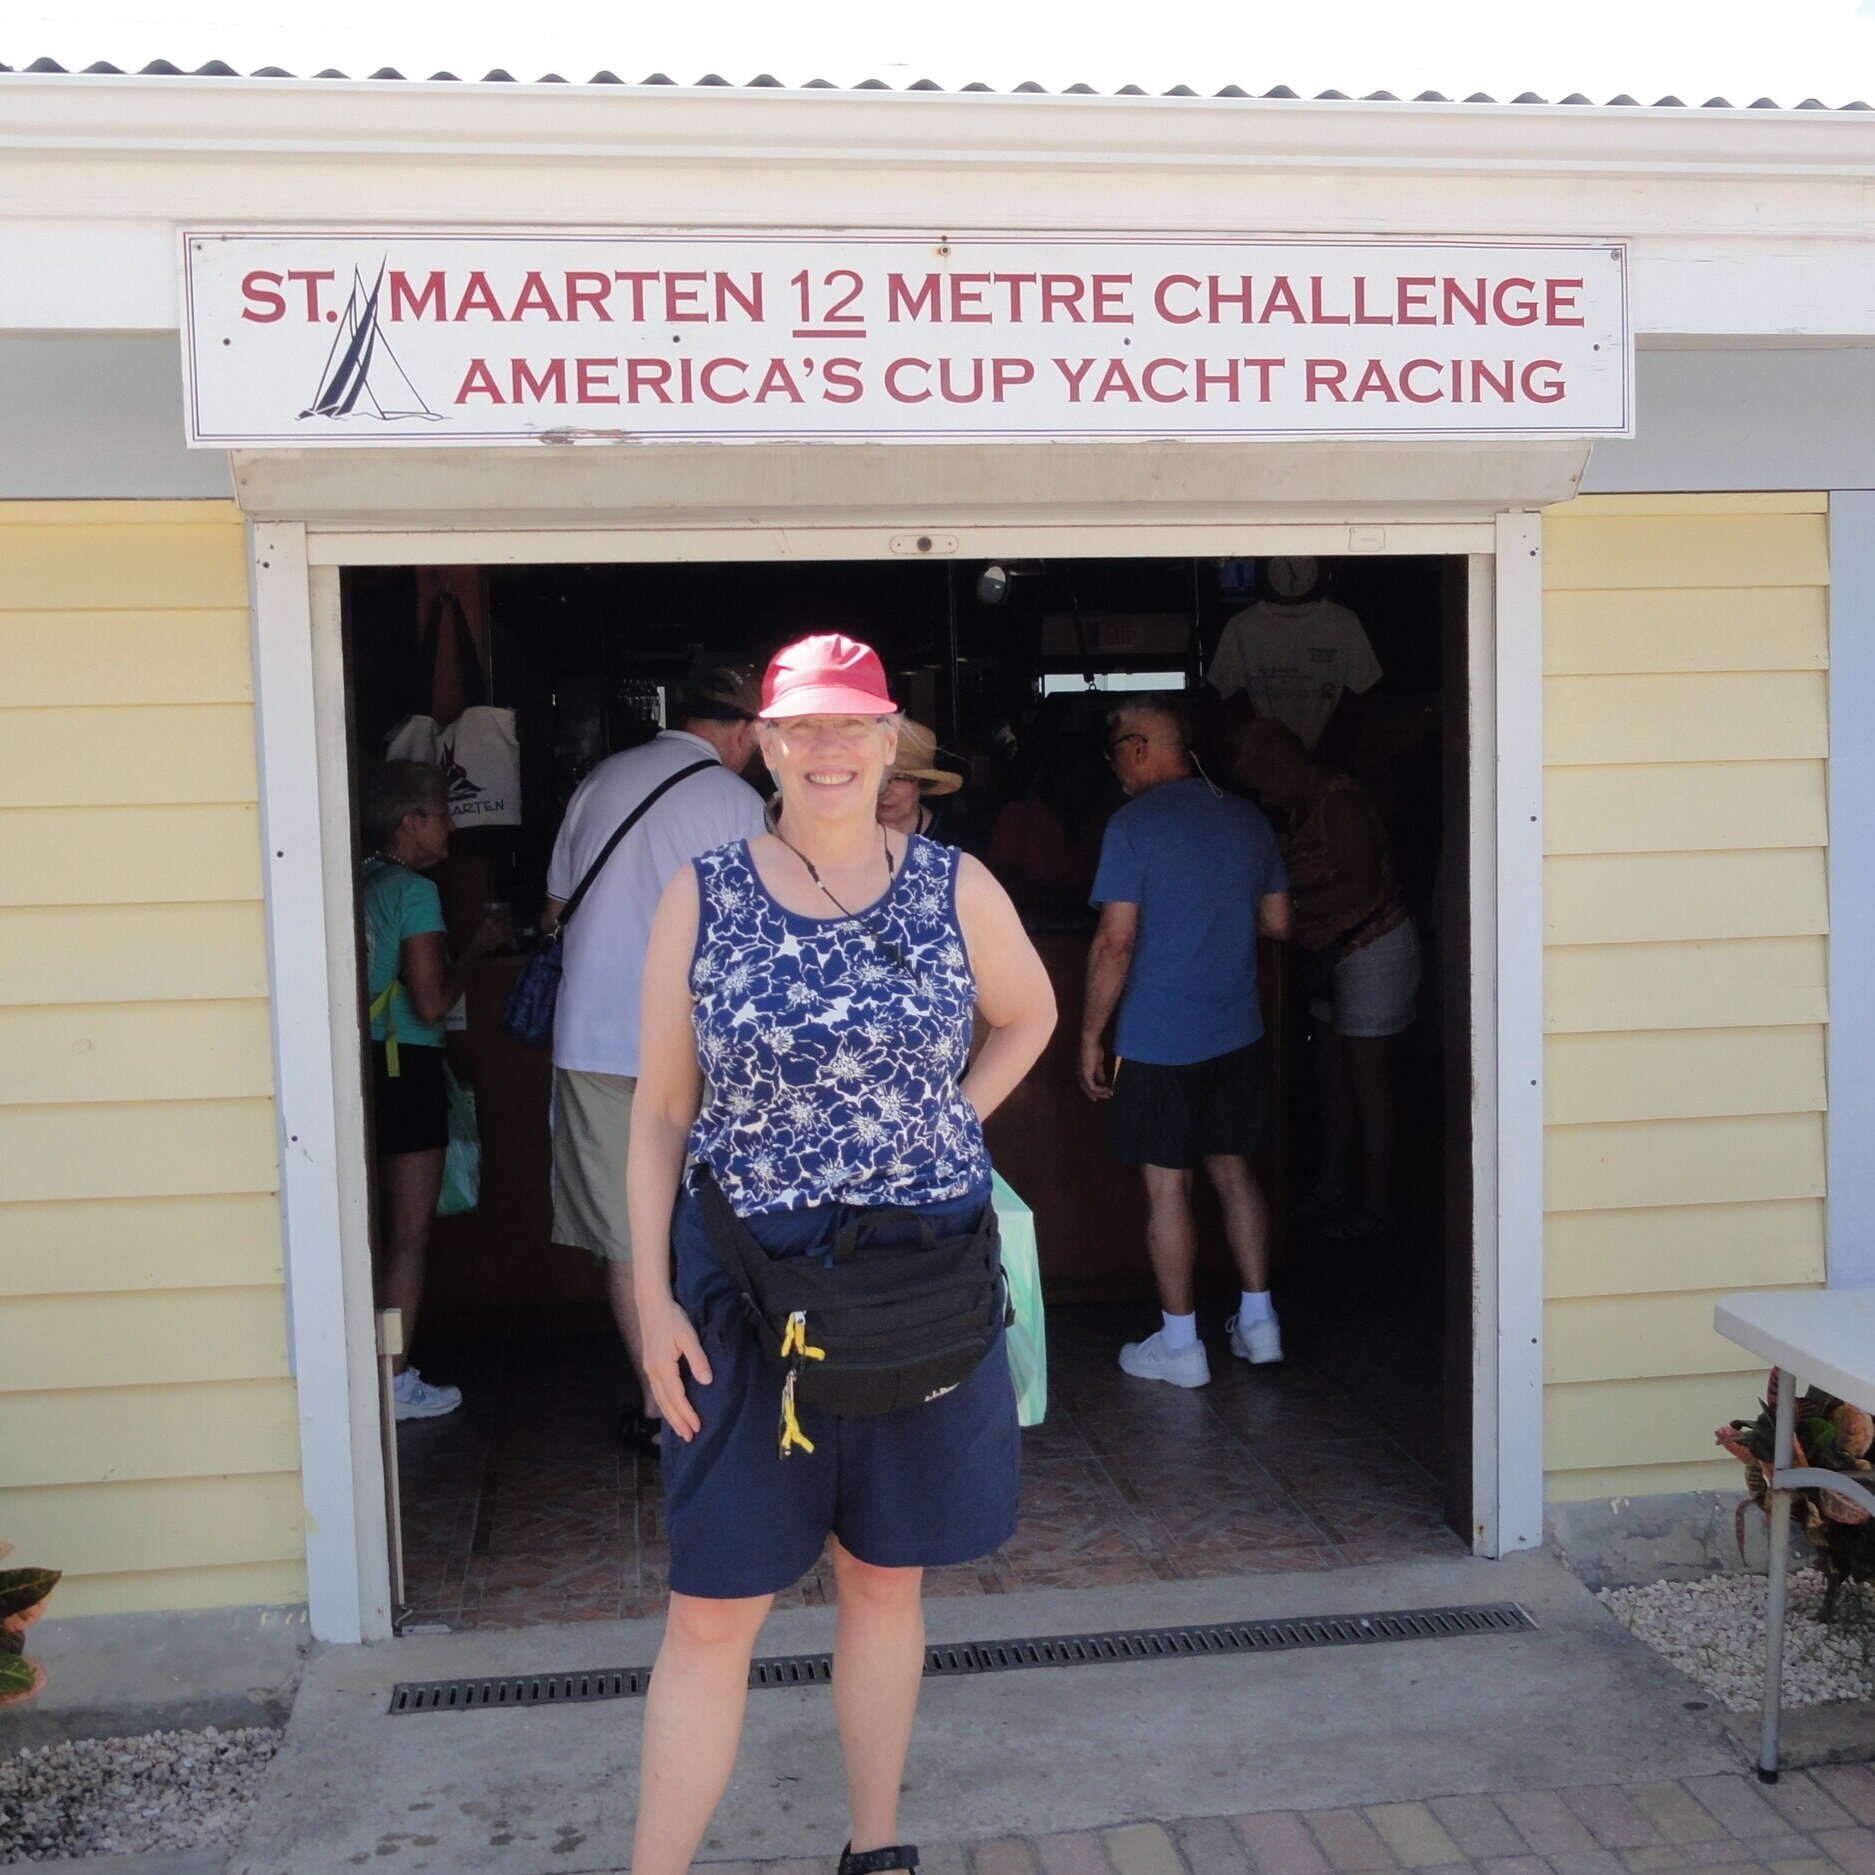 Nancy Engel stands in front of the St. Maarten Y12 meter challenge America's Cup Yacht Racing sign